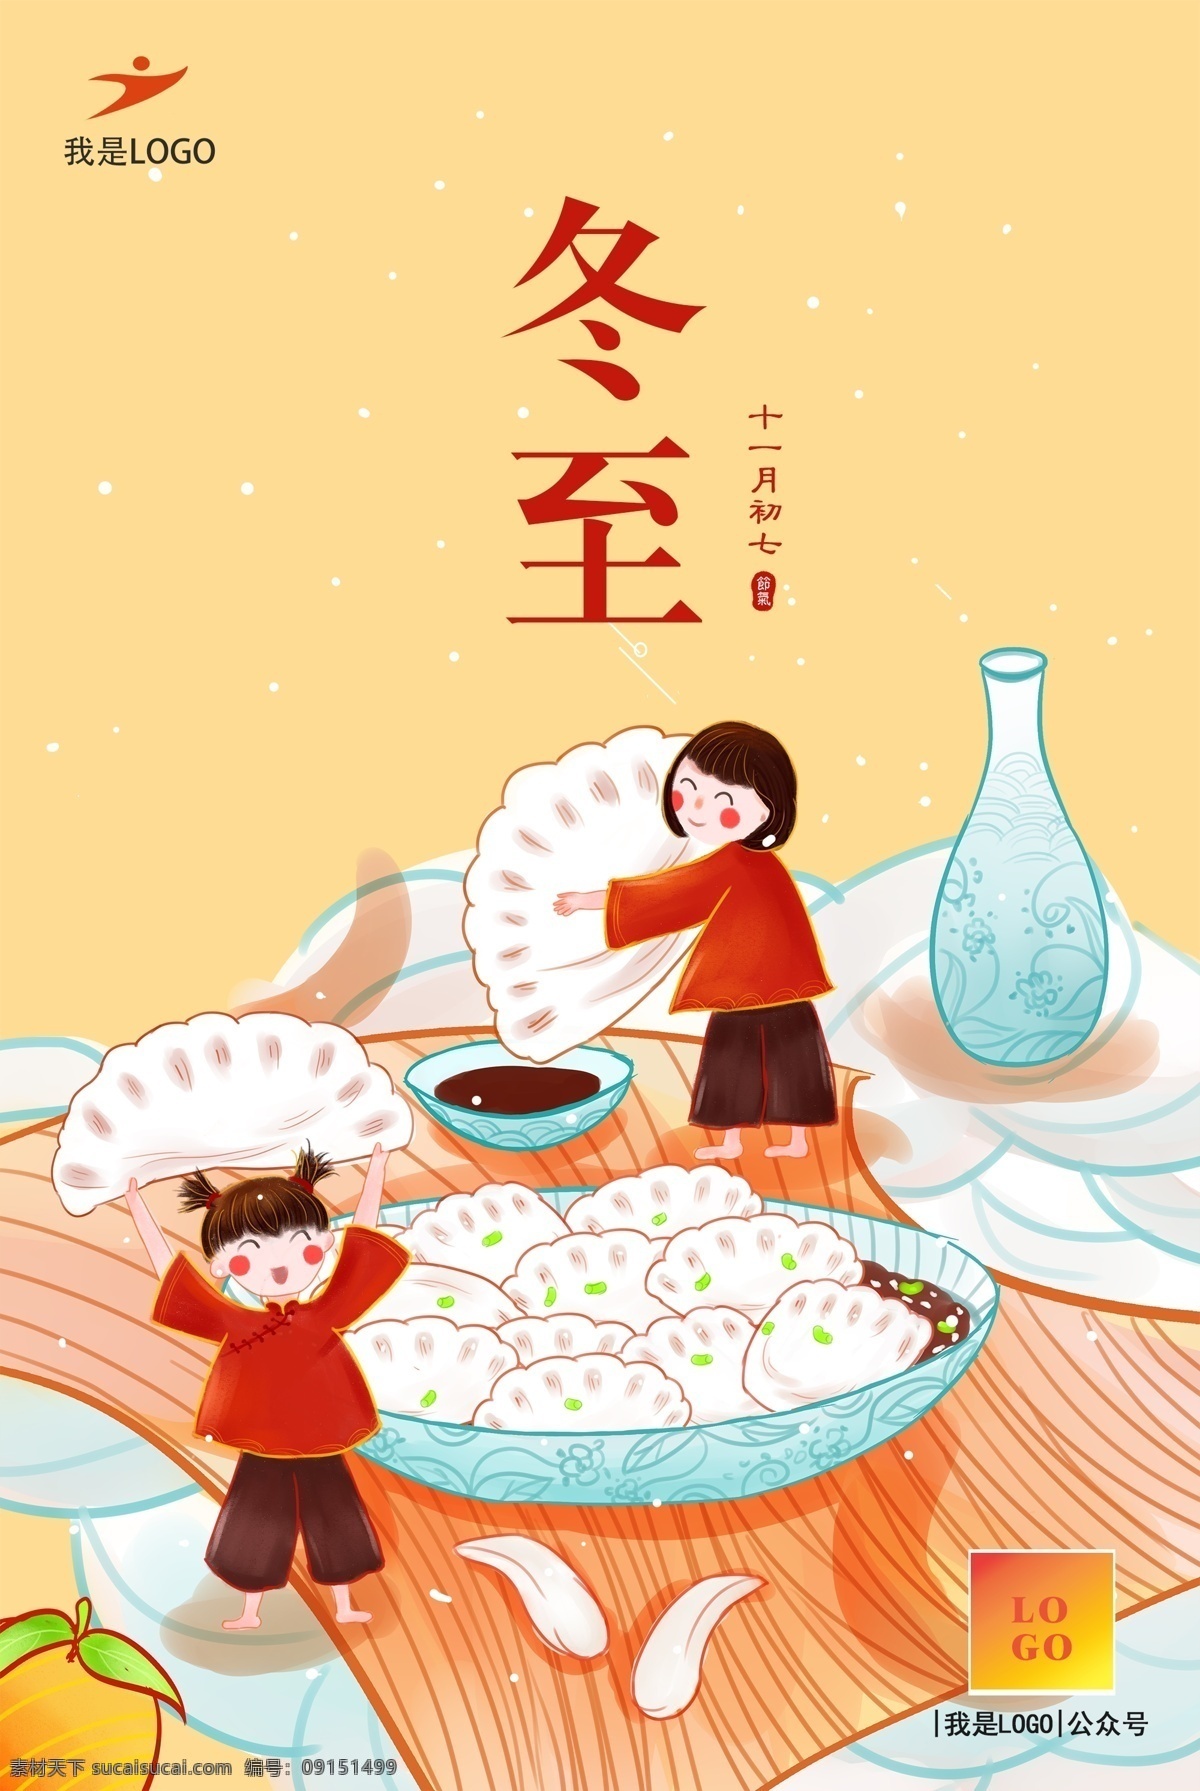 二十四节气 冬至 饺子 汤圆 冬至日 传统节气 传统 海报 分层